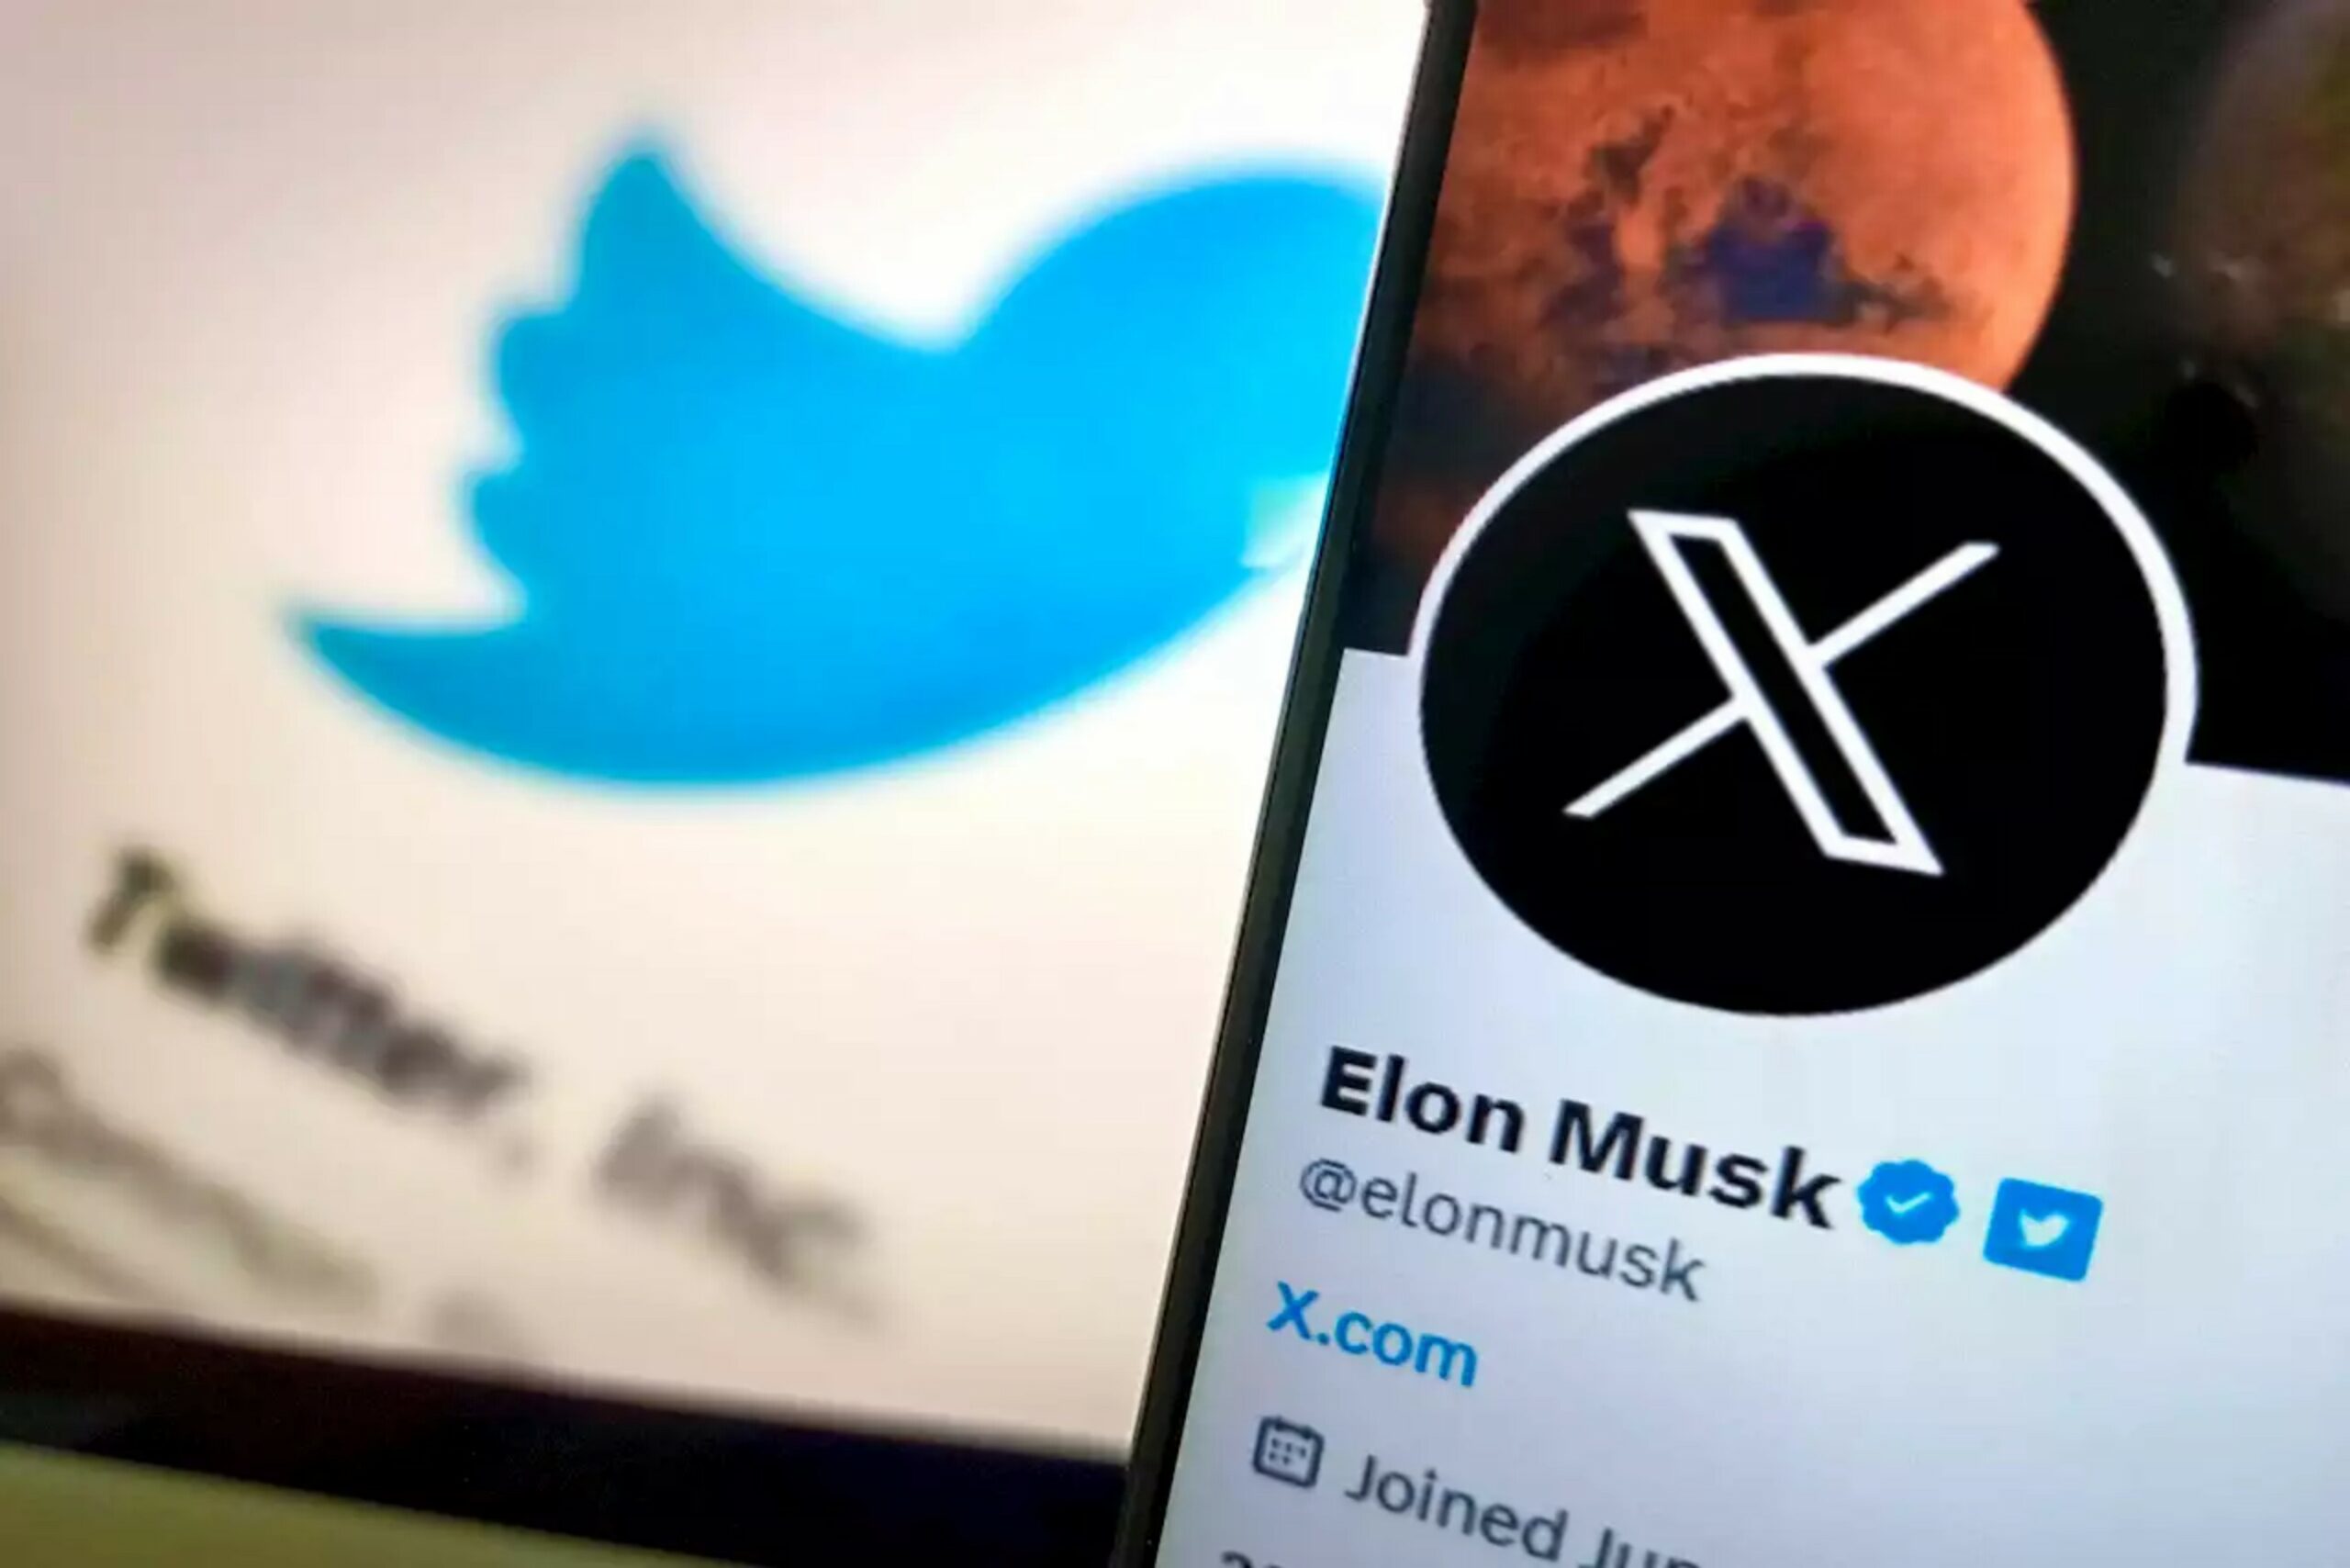 Elon Musk reemplaza el logotipo de Twitter Bird con el símbolo X - RIIAL